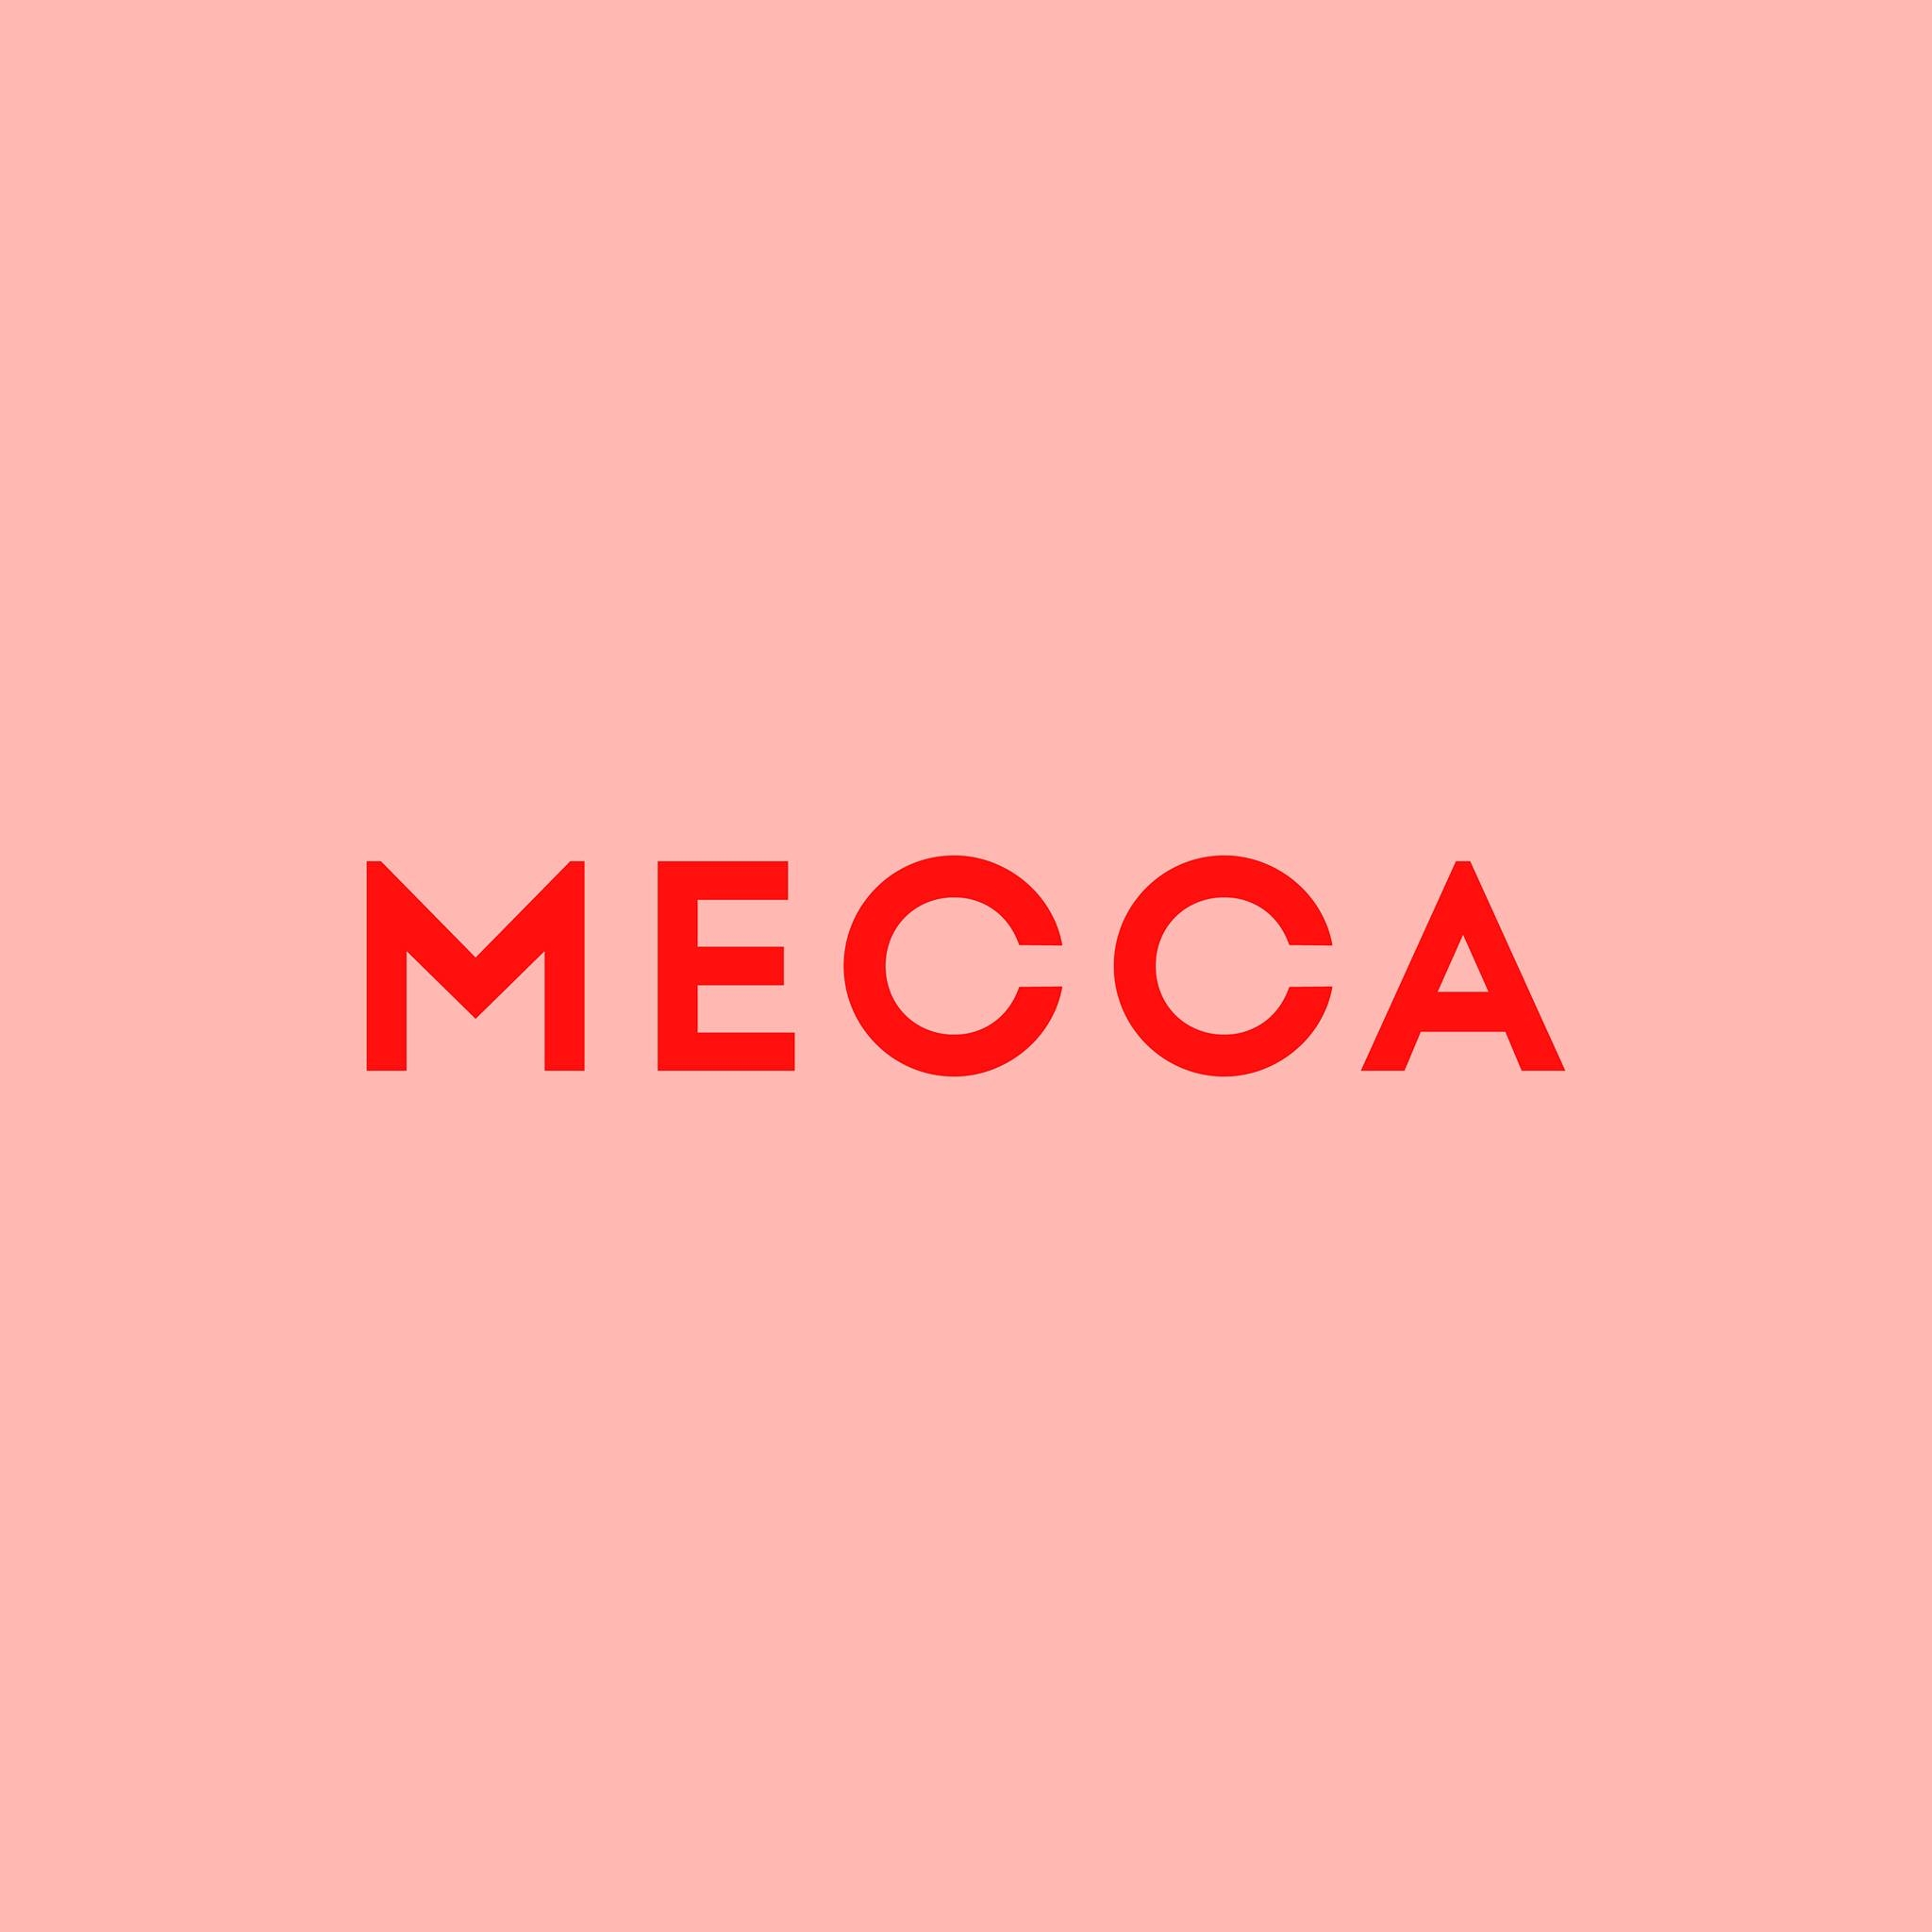 MECCA_FY22_logo.jpg